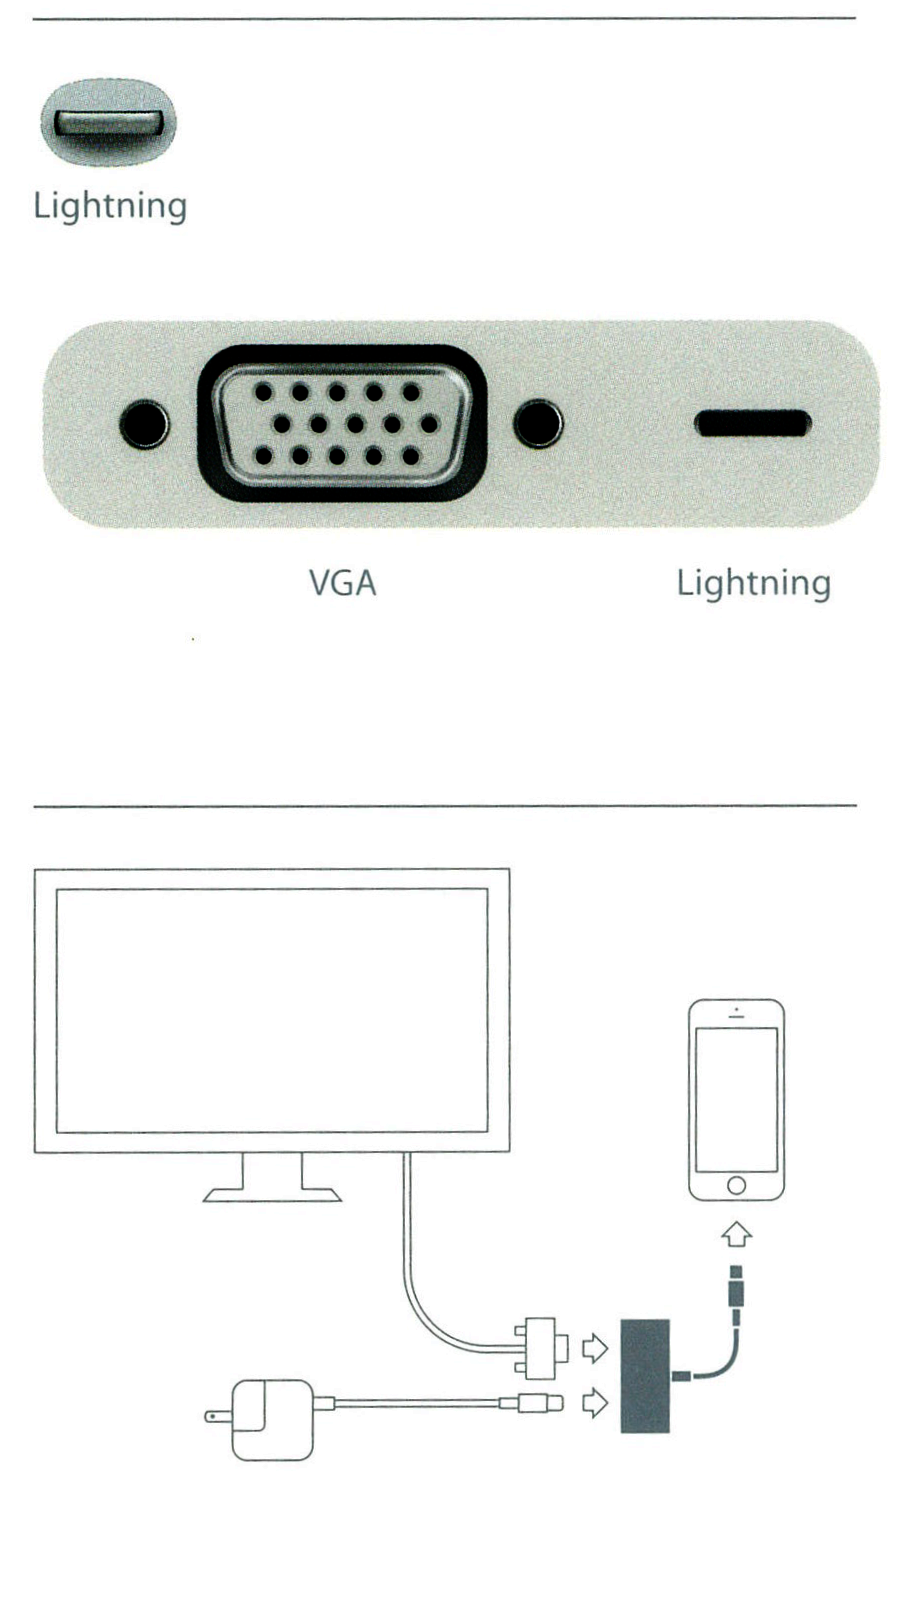 iPadの画面を大きいモニターで見る - Apple Lightning - VGAアダプタ